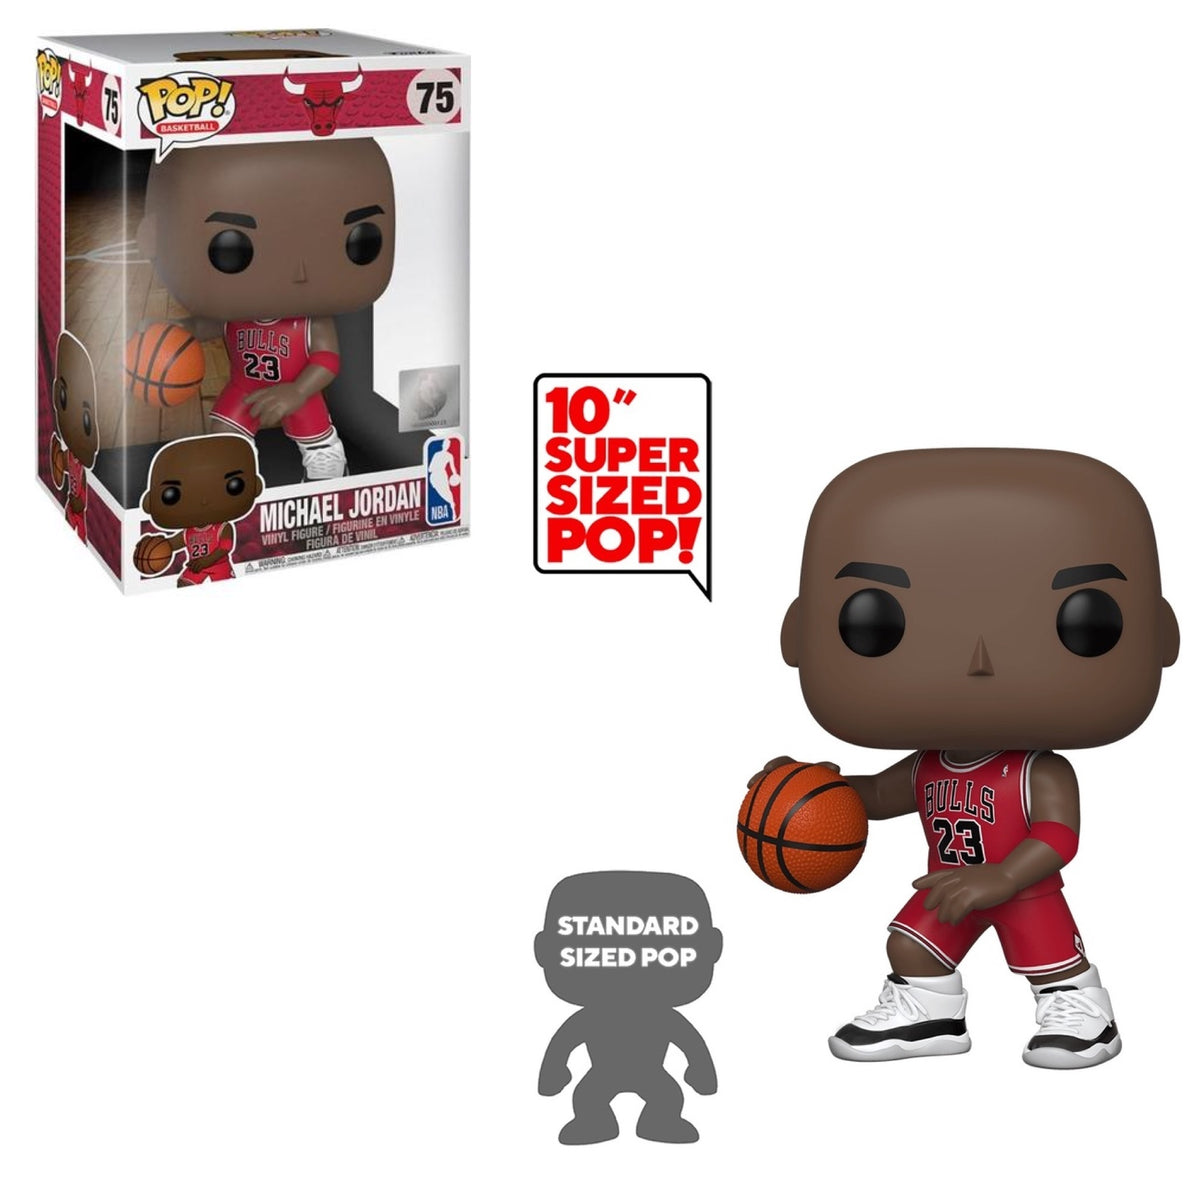 Funko Pop! Vinyl Figure - Michael Jordan Exclusive - Chicago Bulls #126